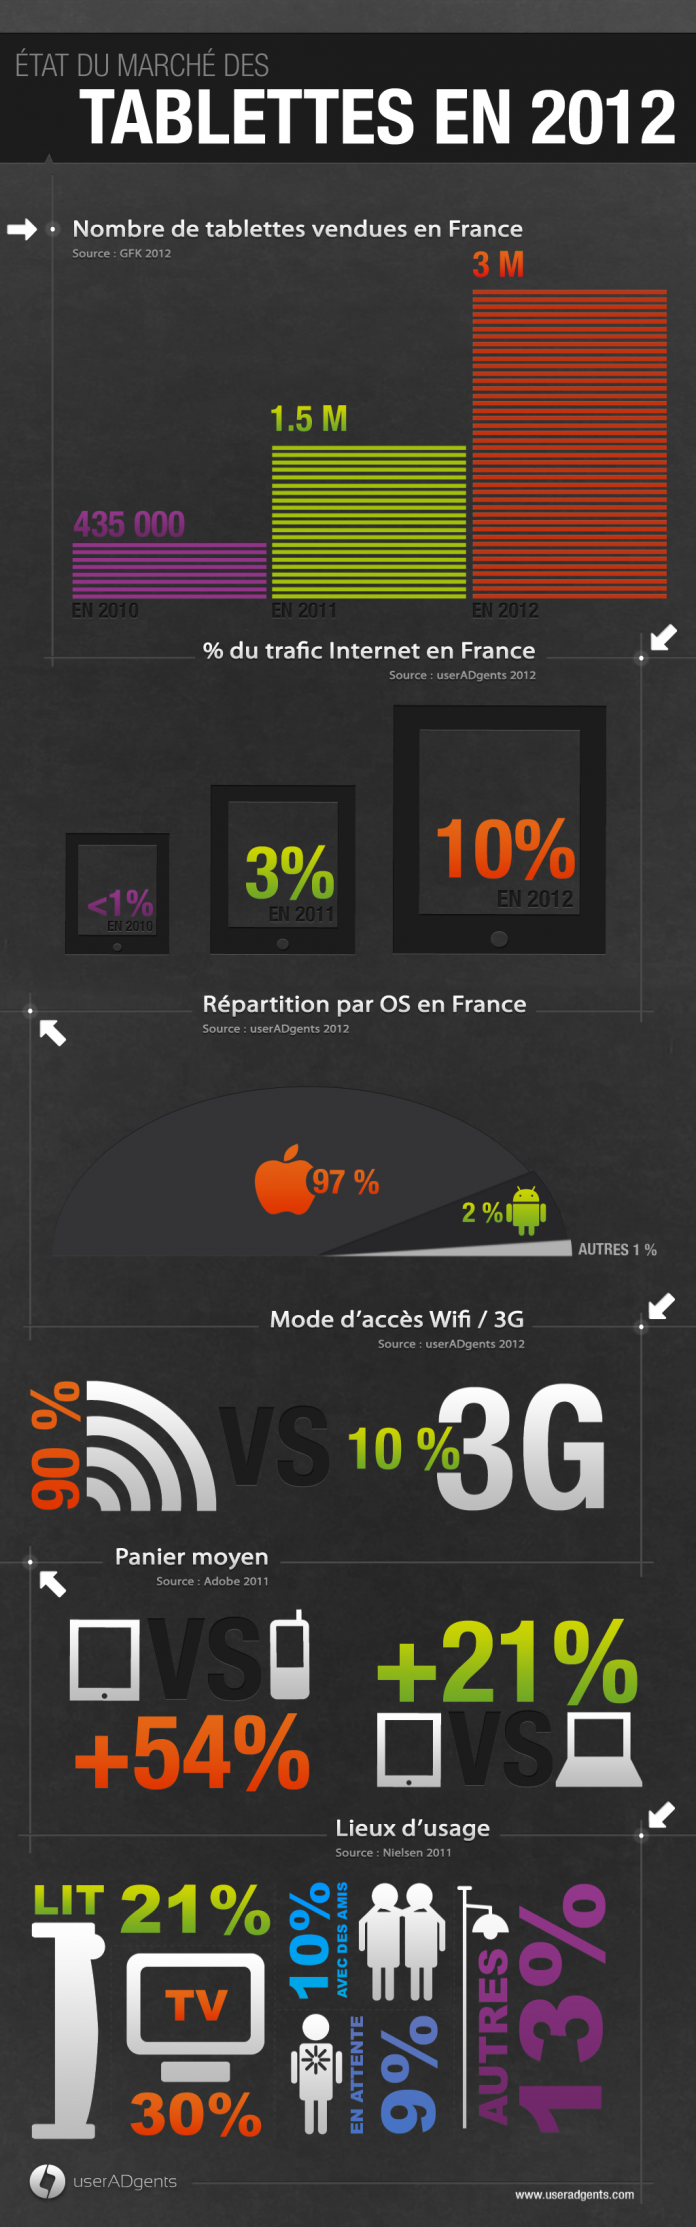 Marché des tablettes tactiles en France en 2012 par UserADgents 1